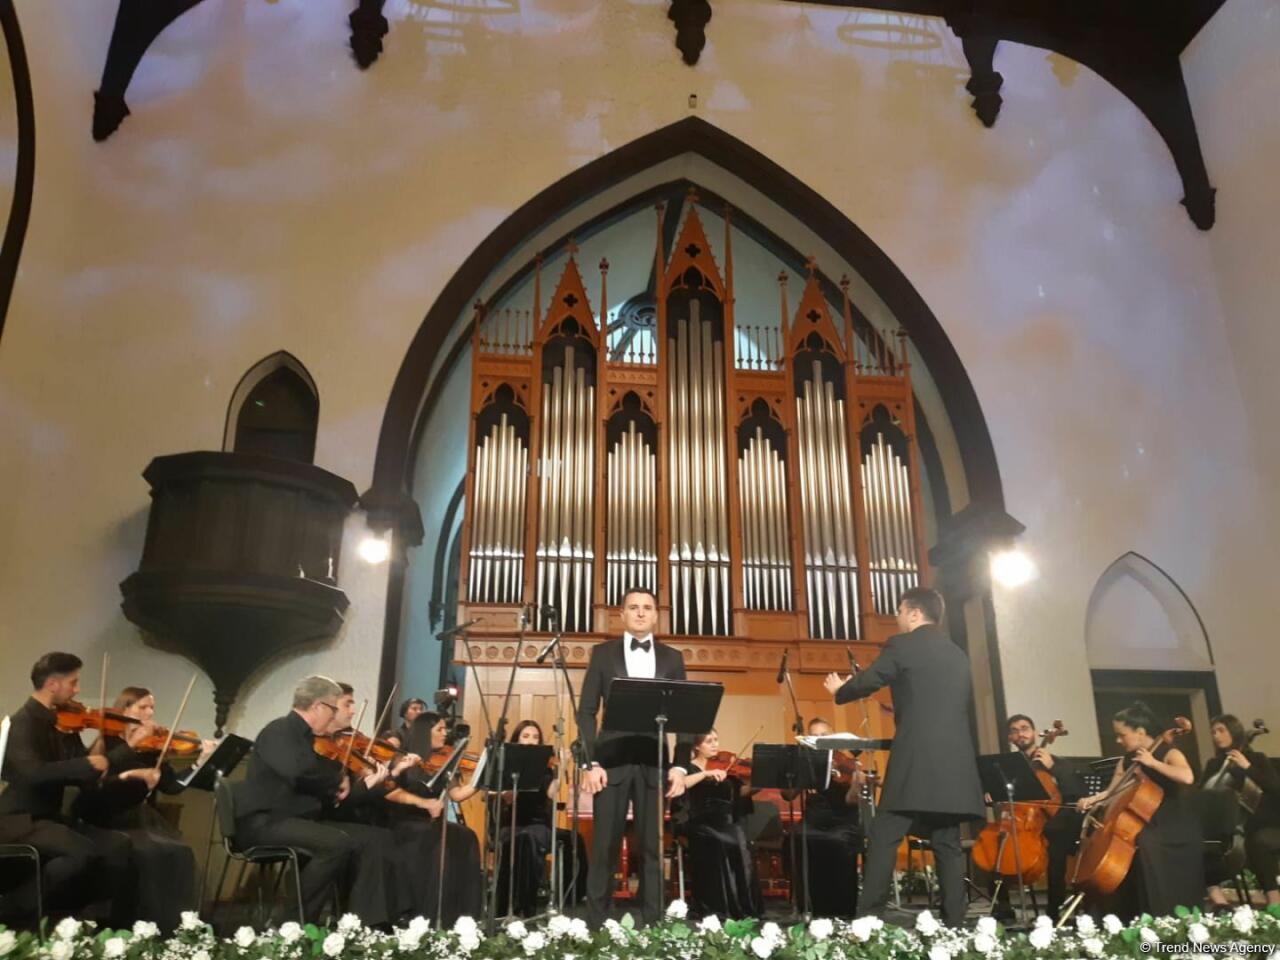 В Баку состоялось торжественное открытие II Азербайджанского международного фестиваля вокалистов